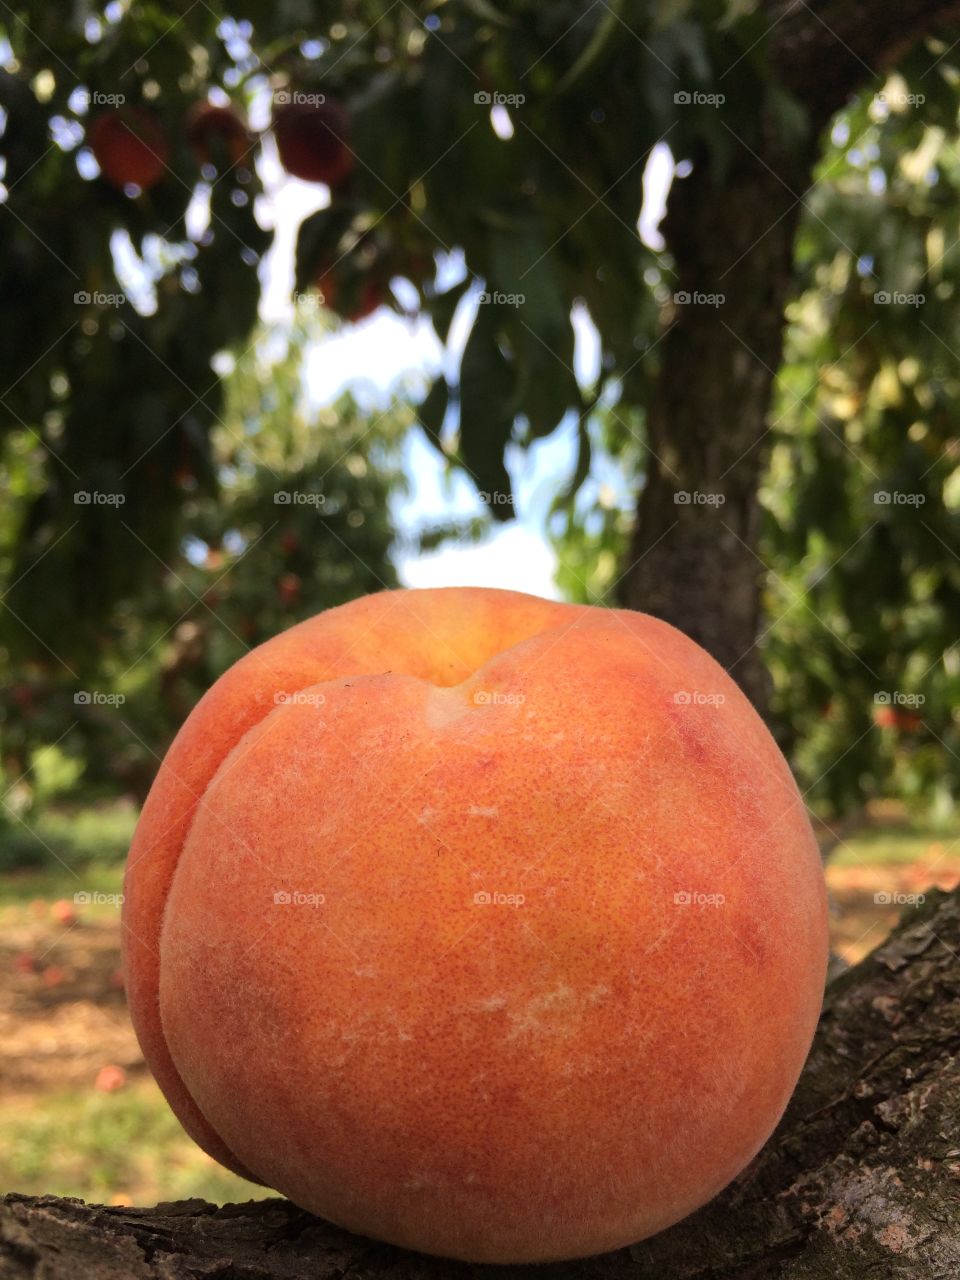 The perfect peach. Ah yummy!!